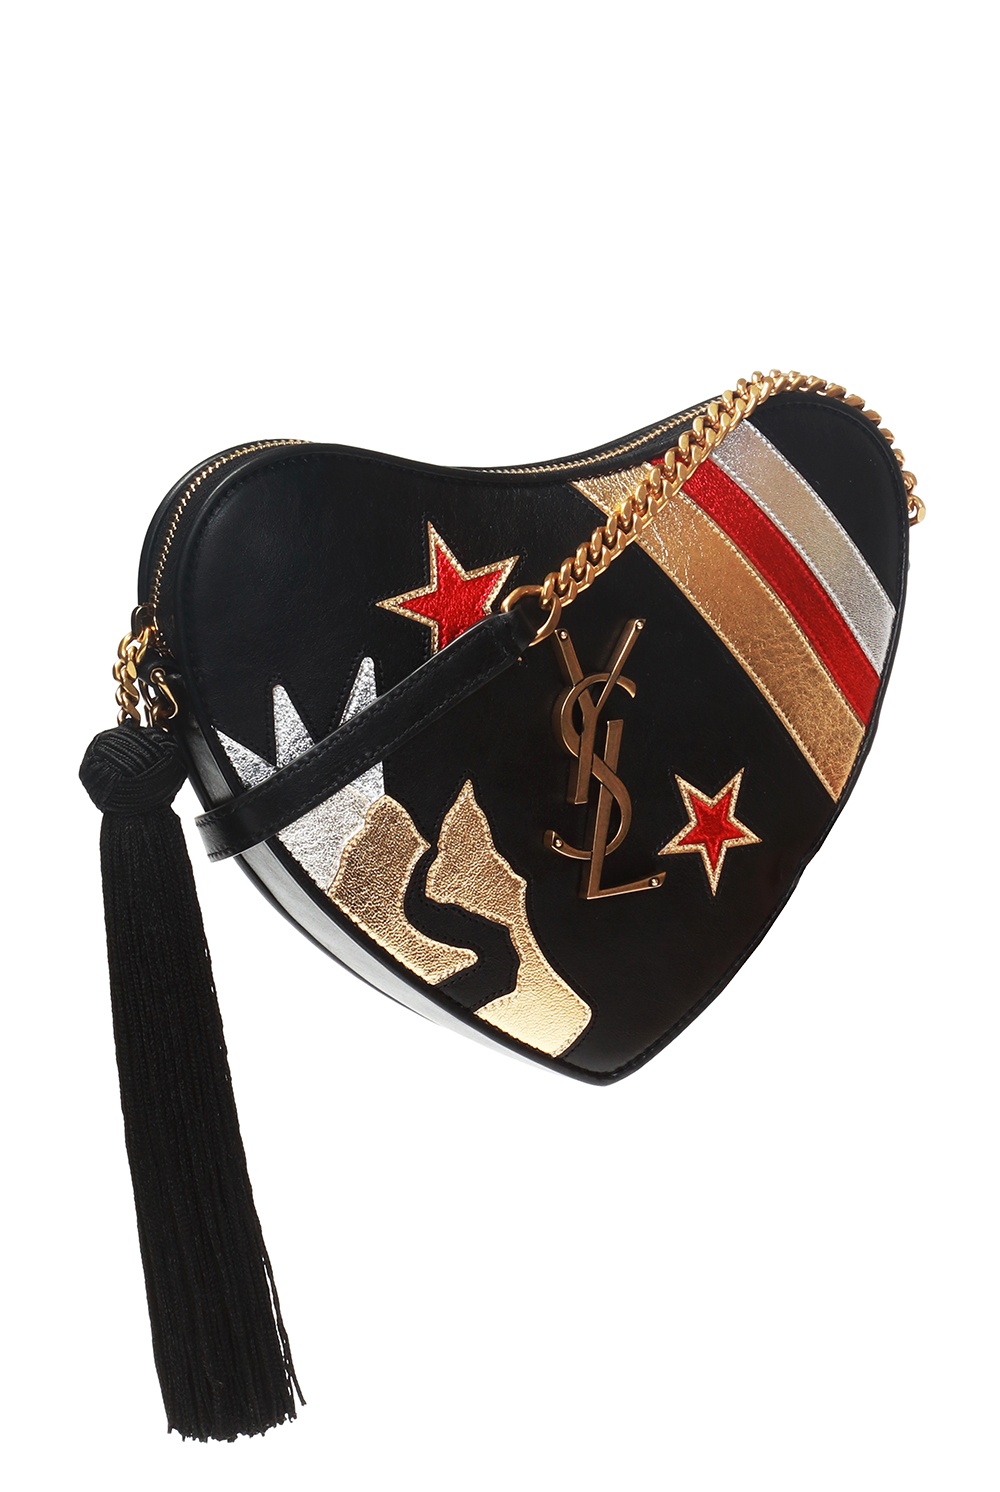 Black 'Le Coeur' shoulder bag Alaïa - Vitkac Canada